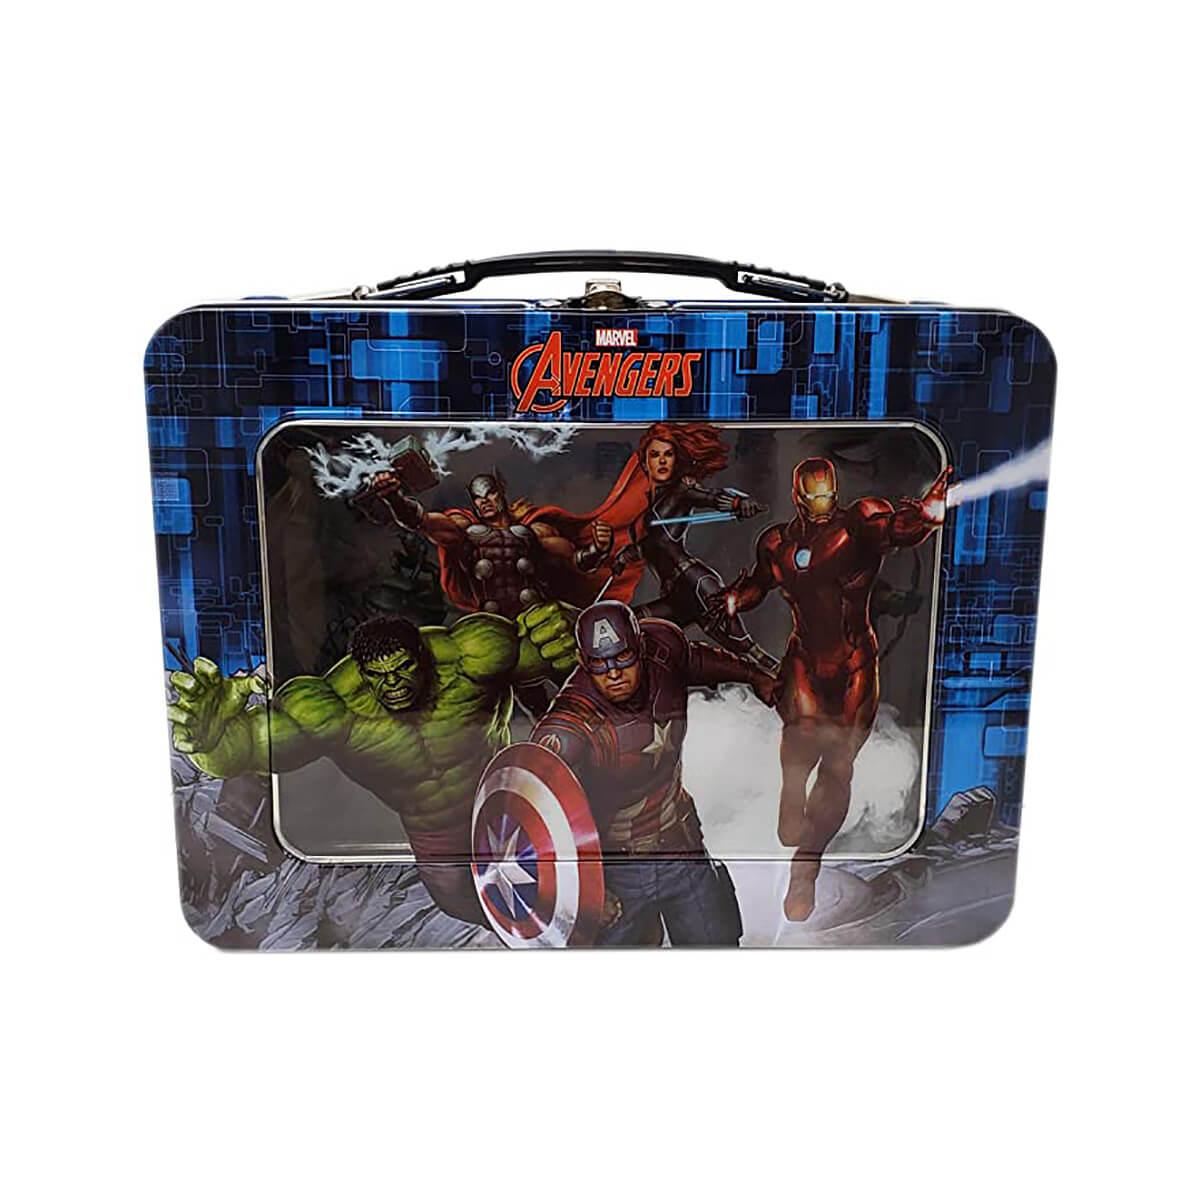  Marvel's Avengers Tin Lunch Box